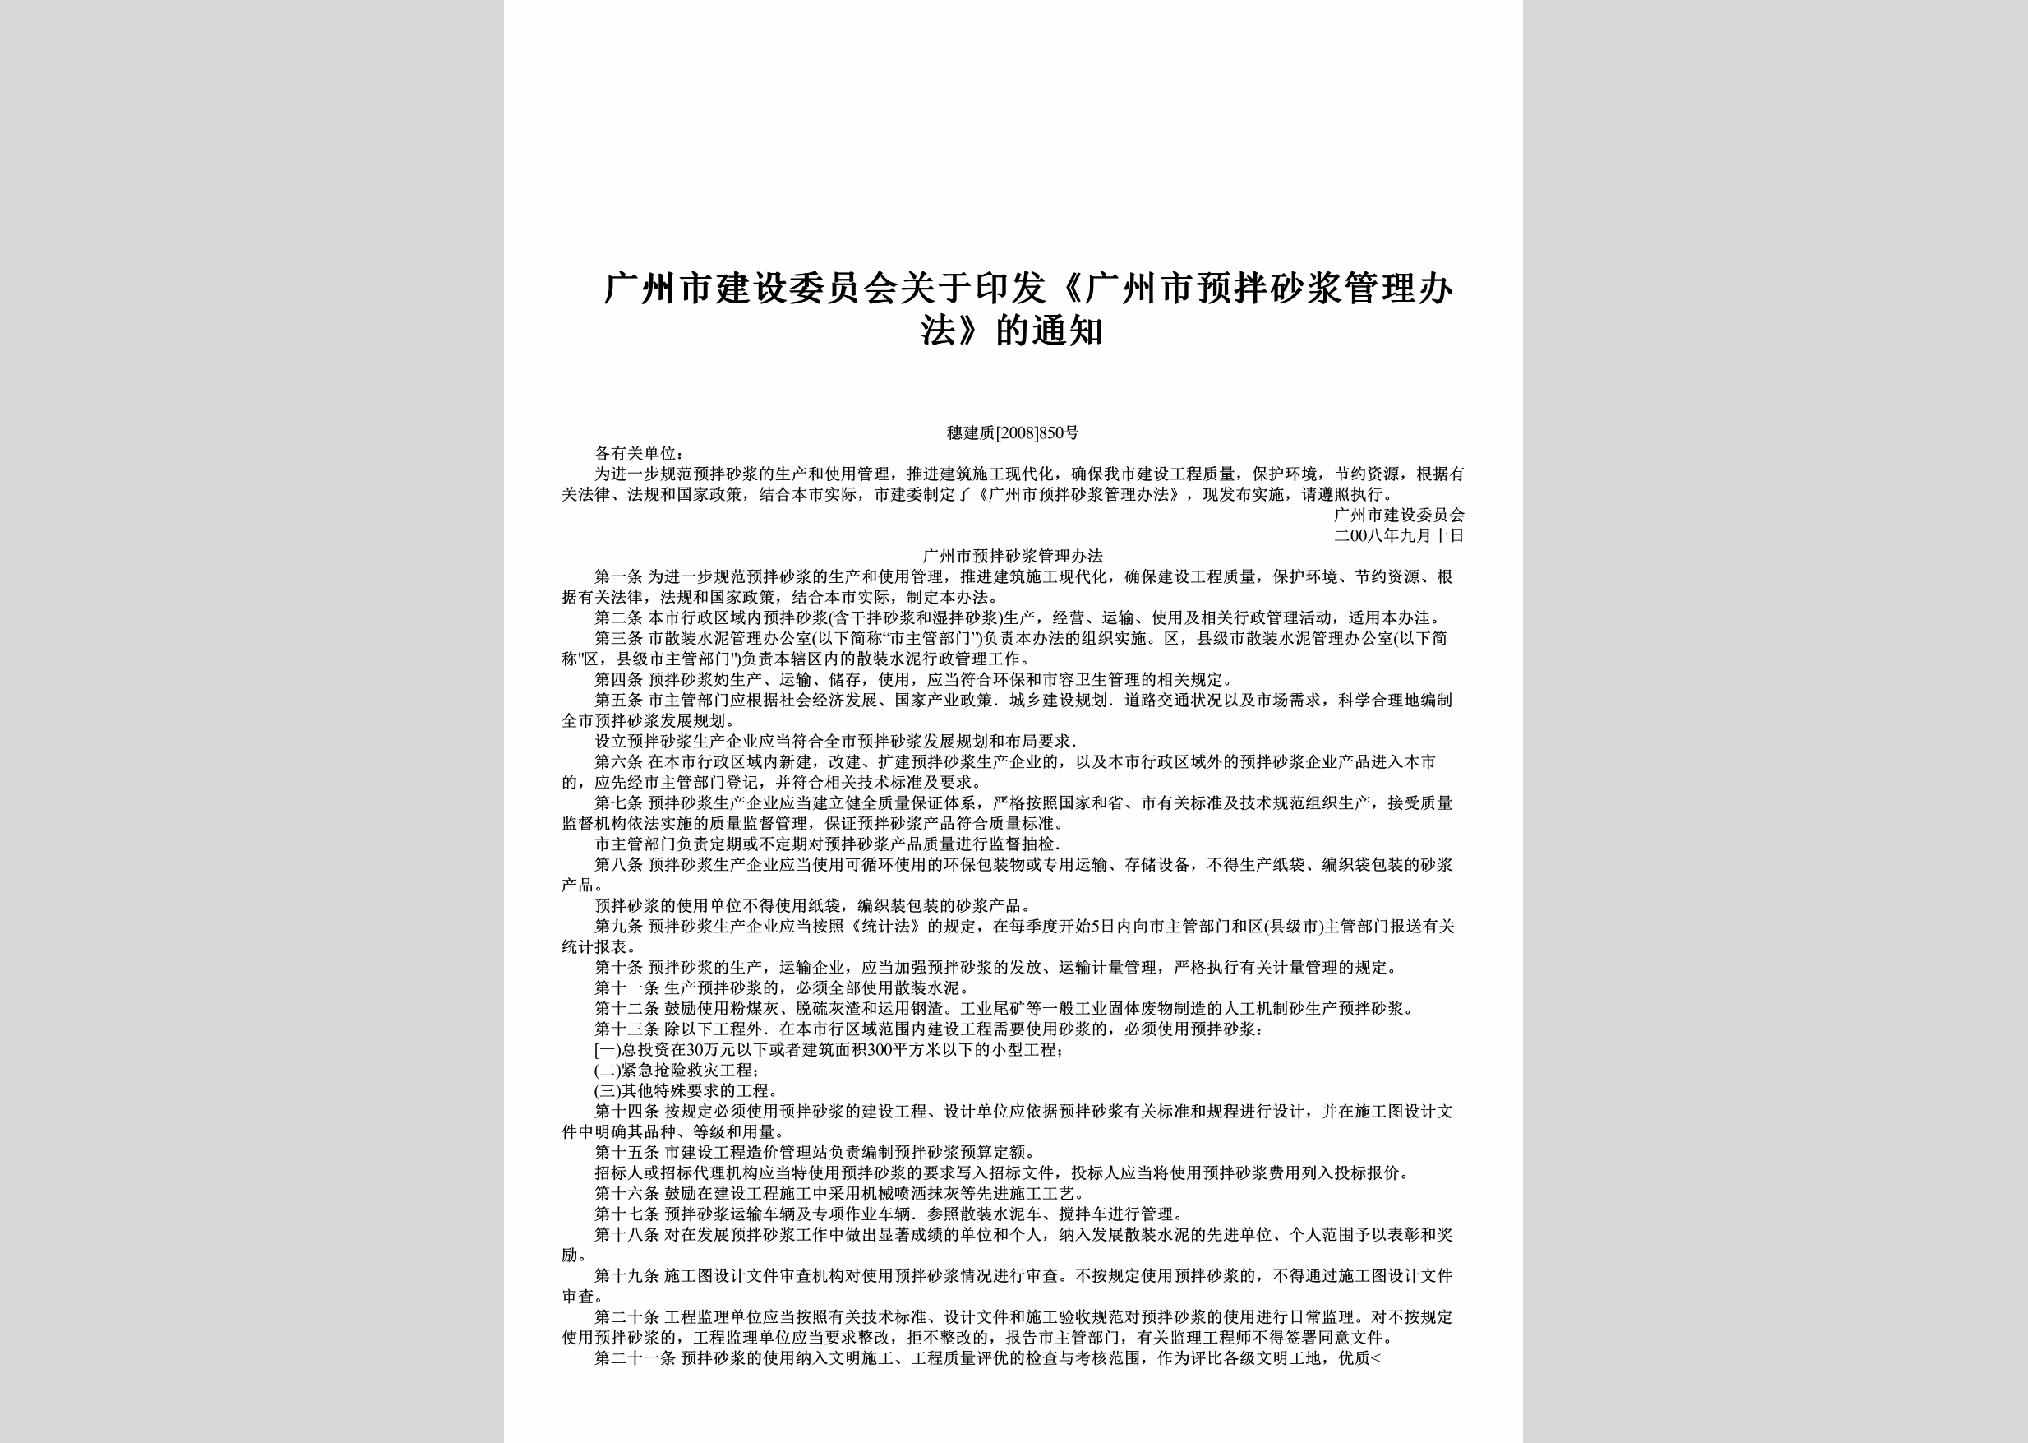 穗建质[2008]850号：关于印发《广州市预拌砂浆管理办法》的通知